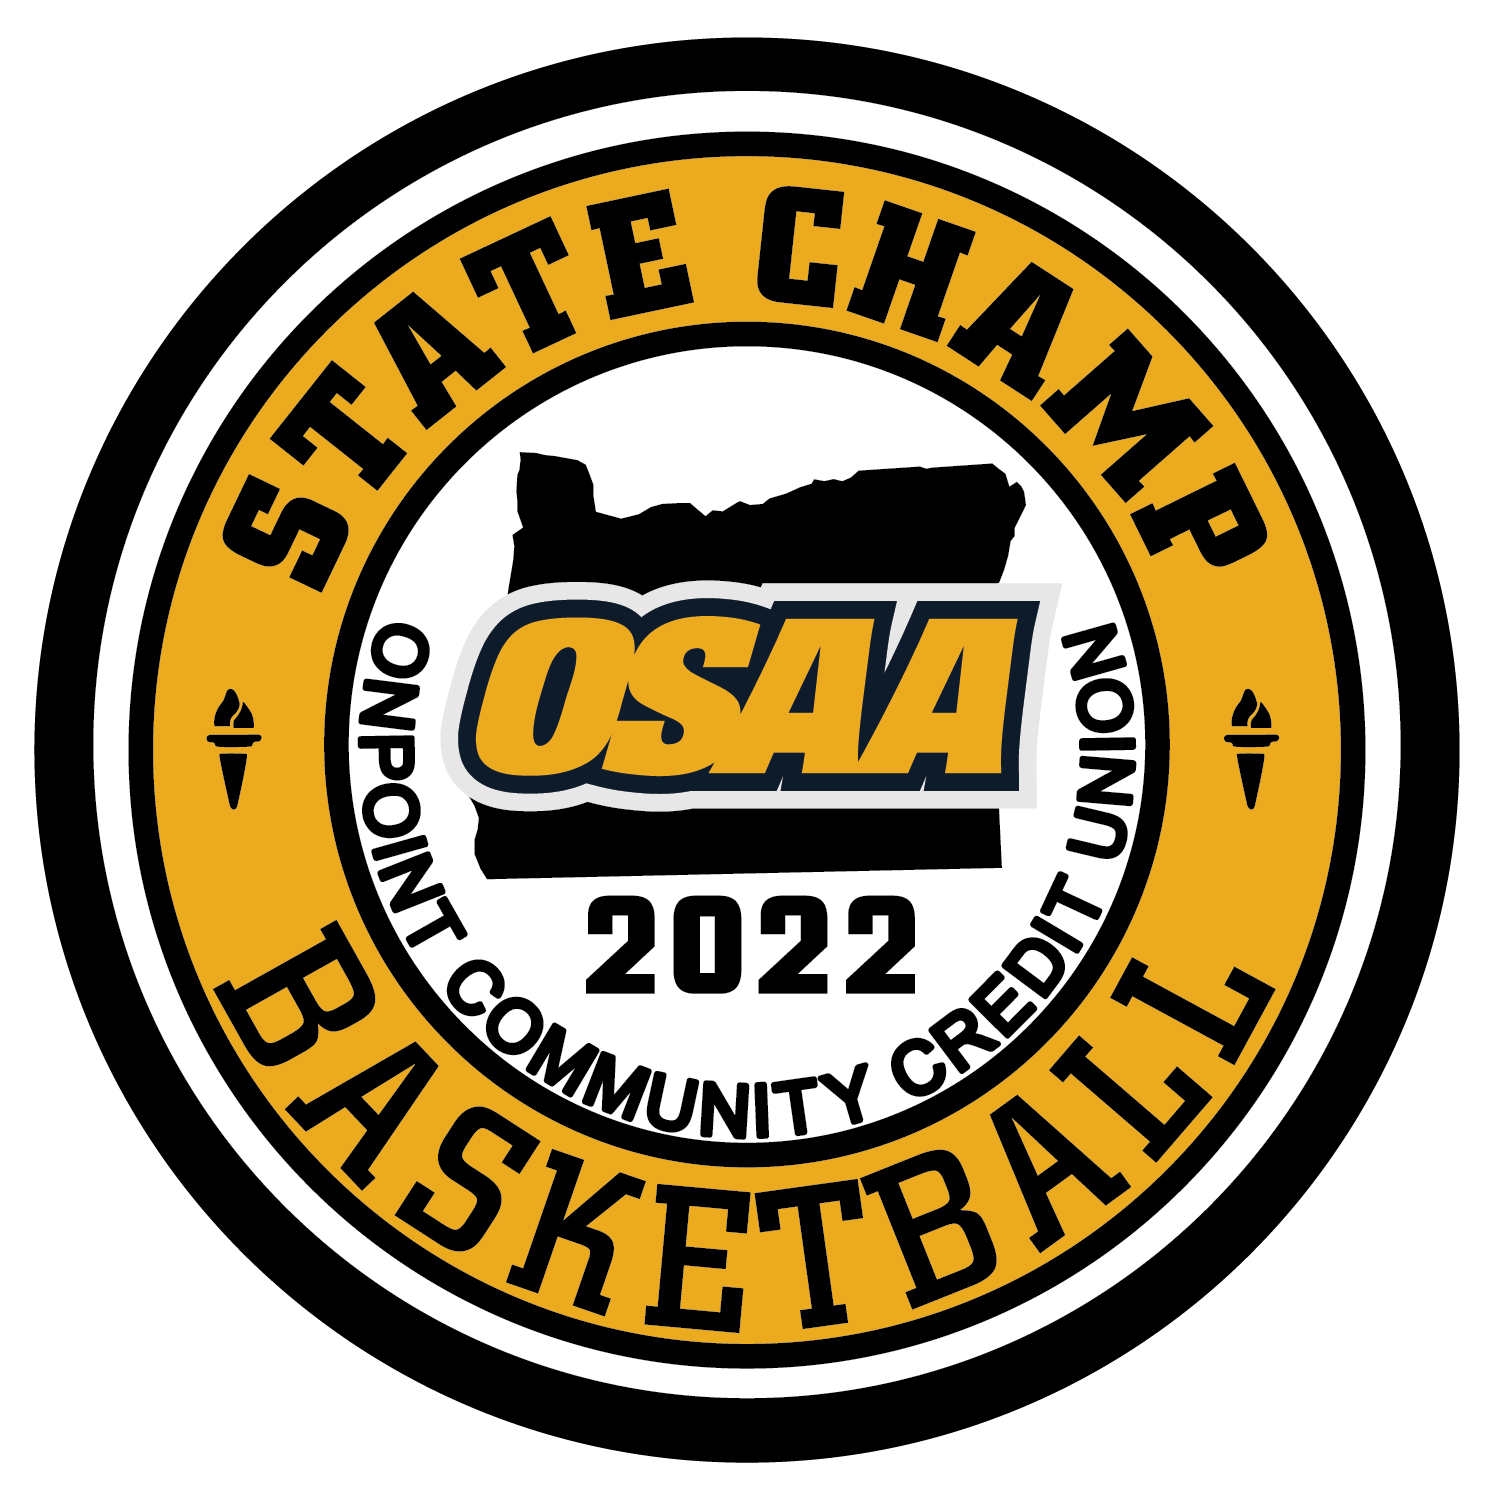 OSAA 2022 State Basketball Champion Gold Patch